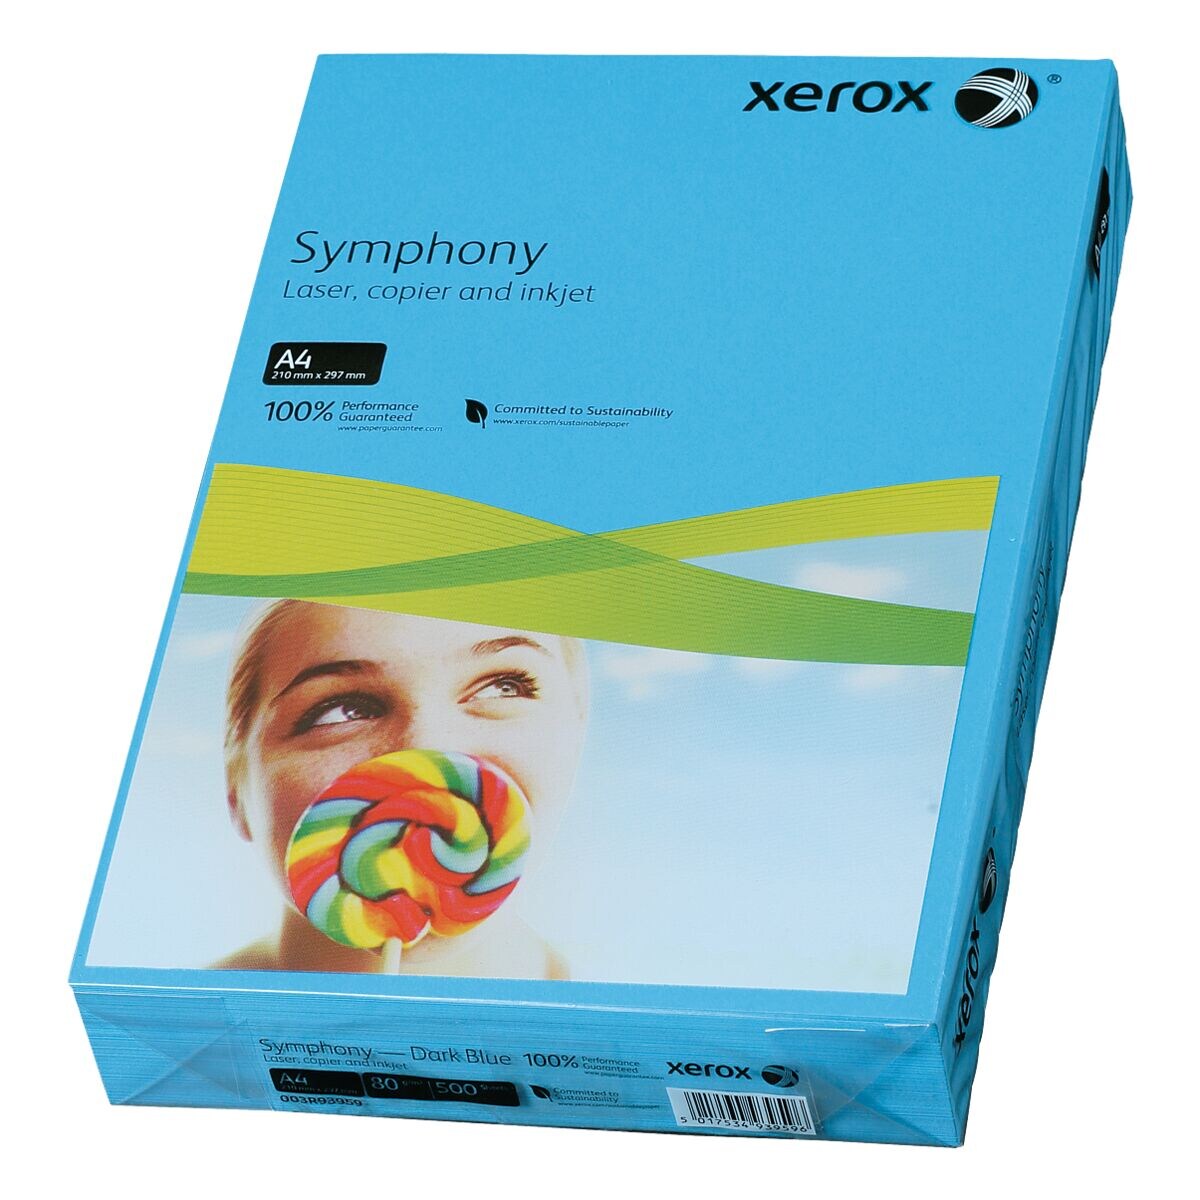 Papier imprimante couleur A4 Xerox Symphony - 500 feuilles au total